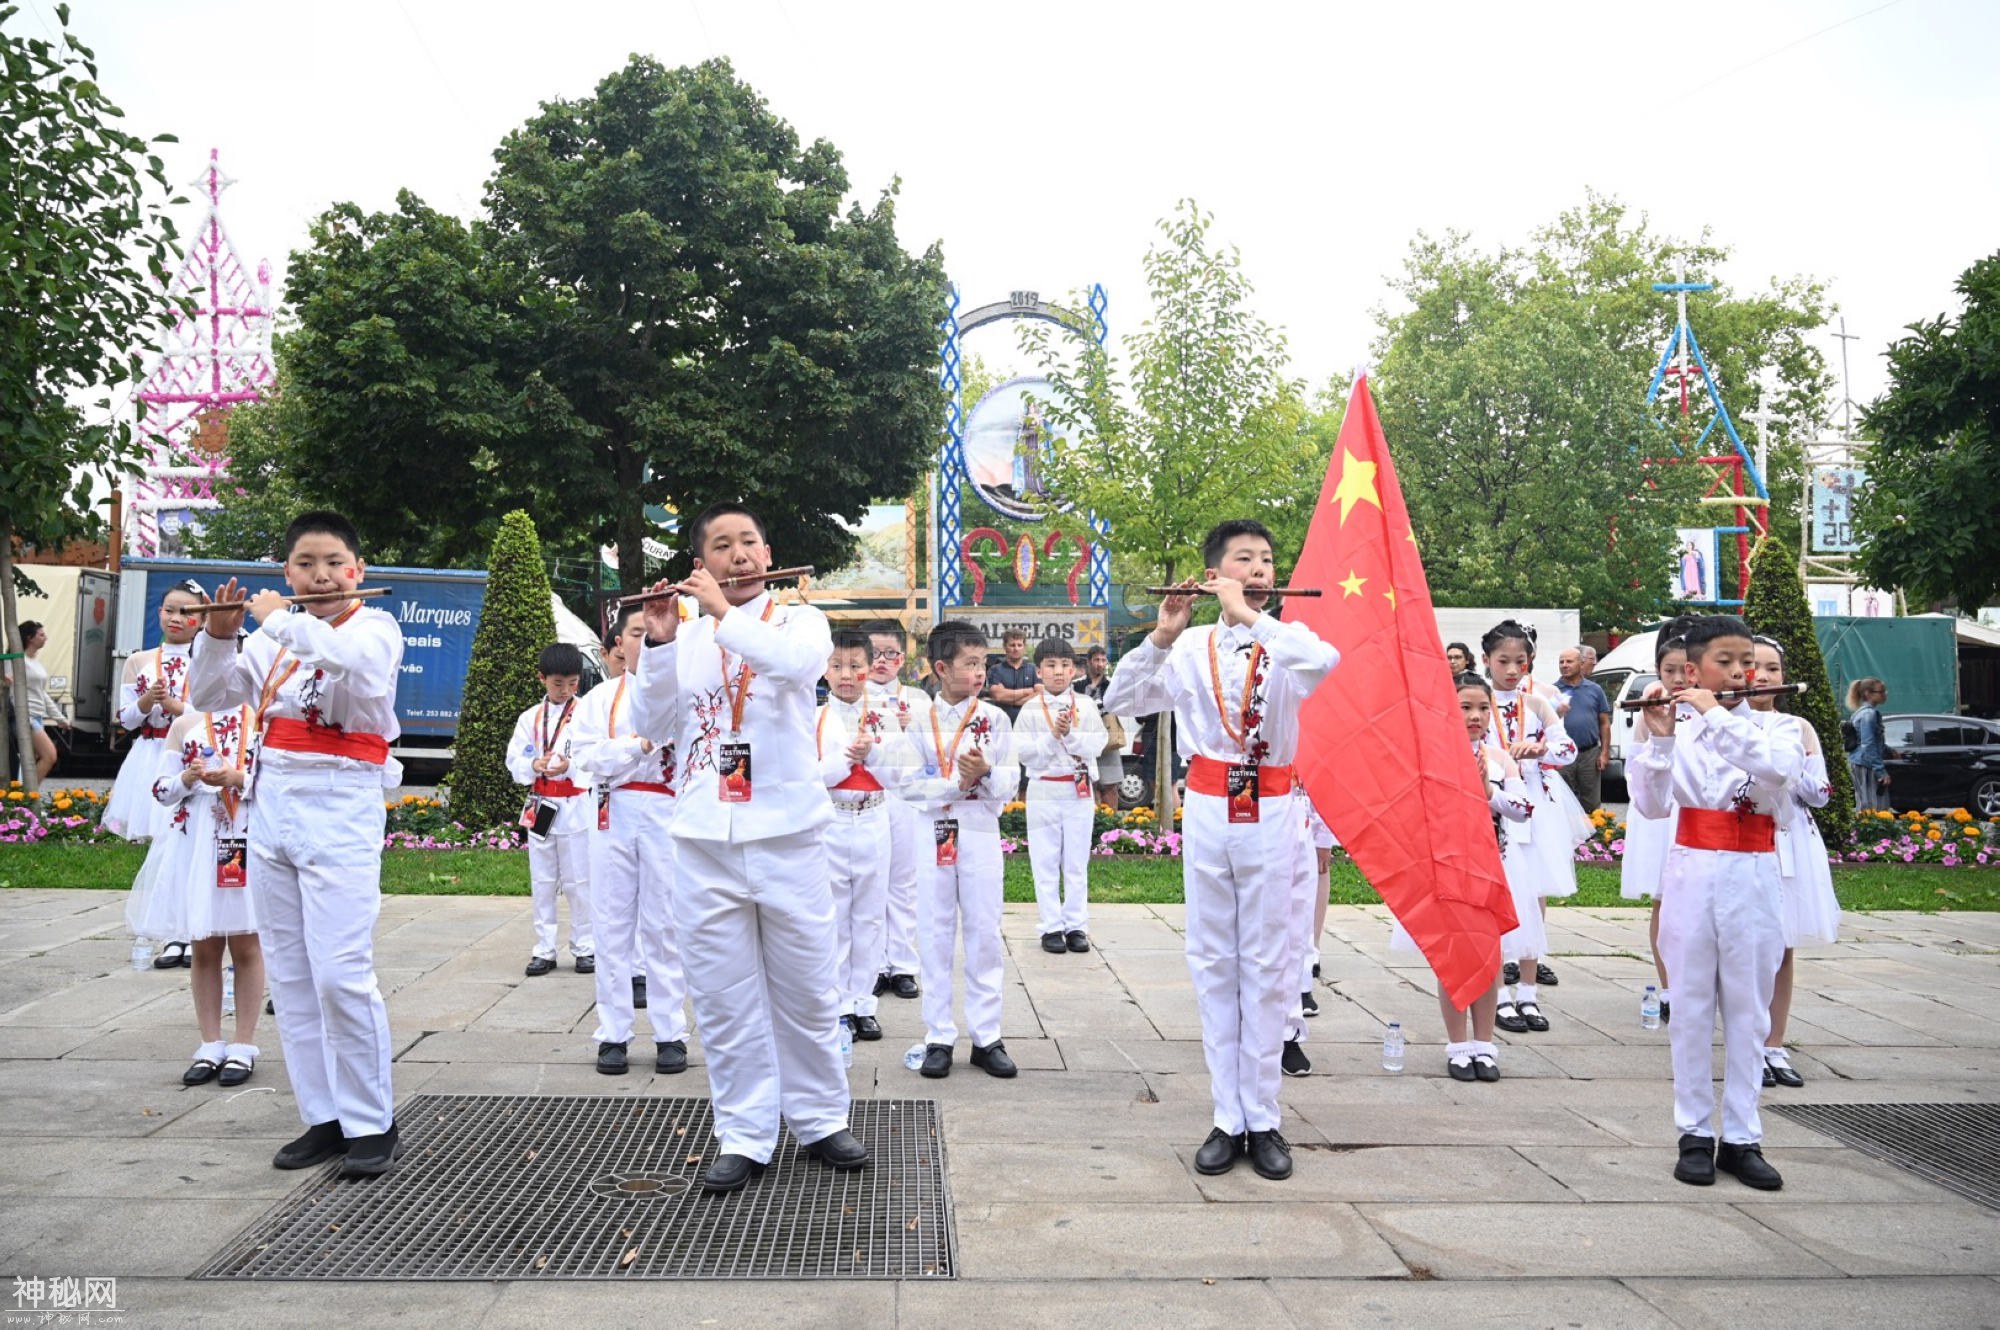 巴塞罗斯国际民俗节 中国民乐首次亮相 杭州这群孩子赚足了眼球-10.jpg